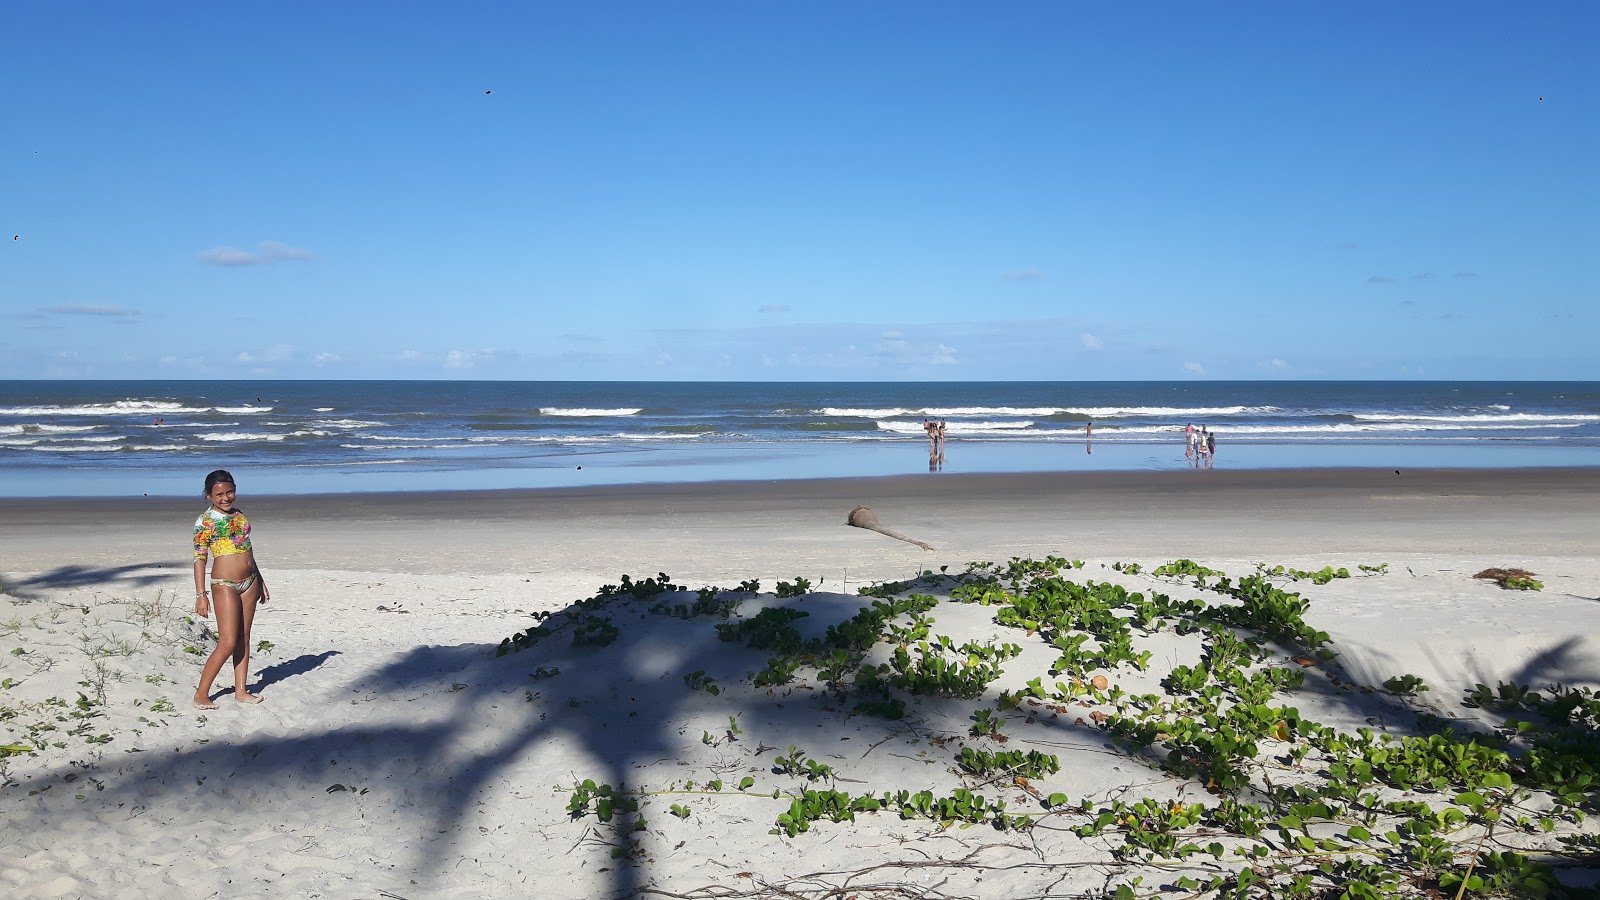 科斯塔海滩的照片 带有碧绿色水表面